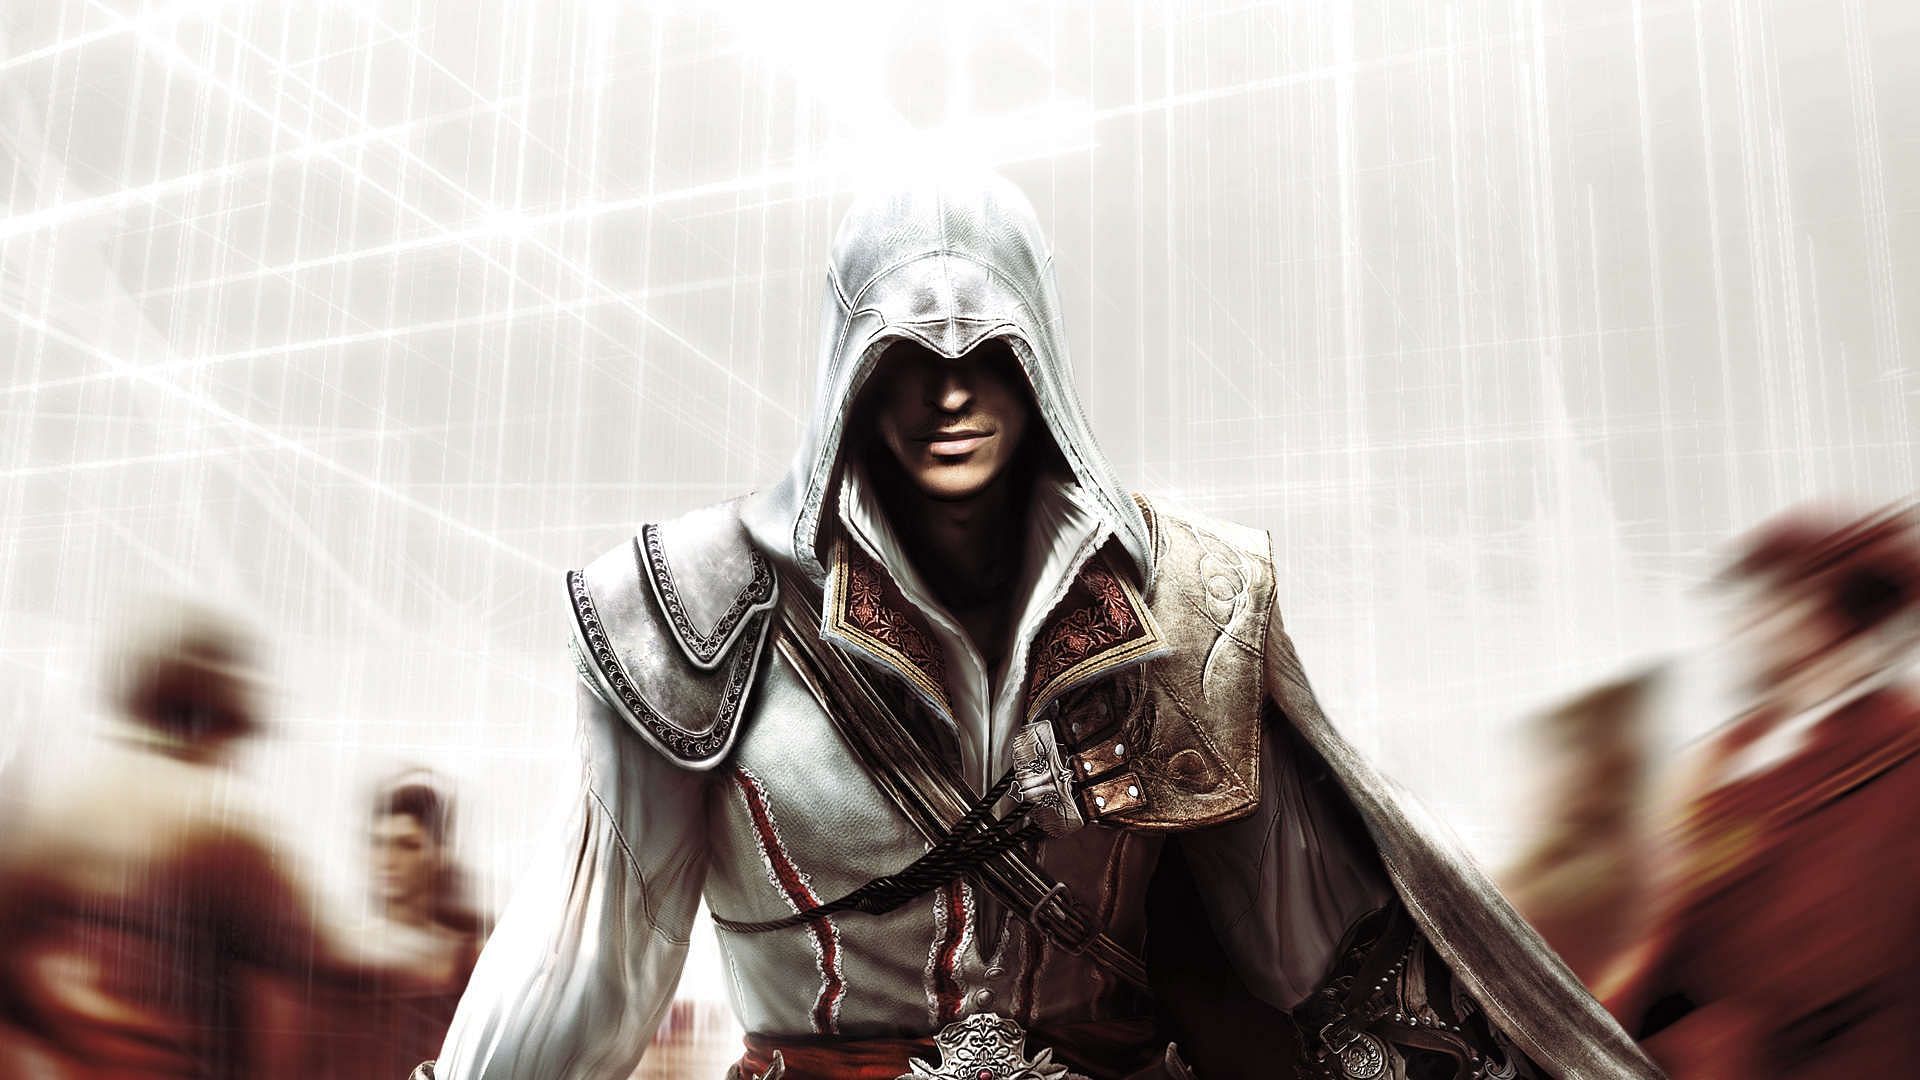 Ezio Auditore in AC 2 (Image via Ubisoft)